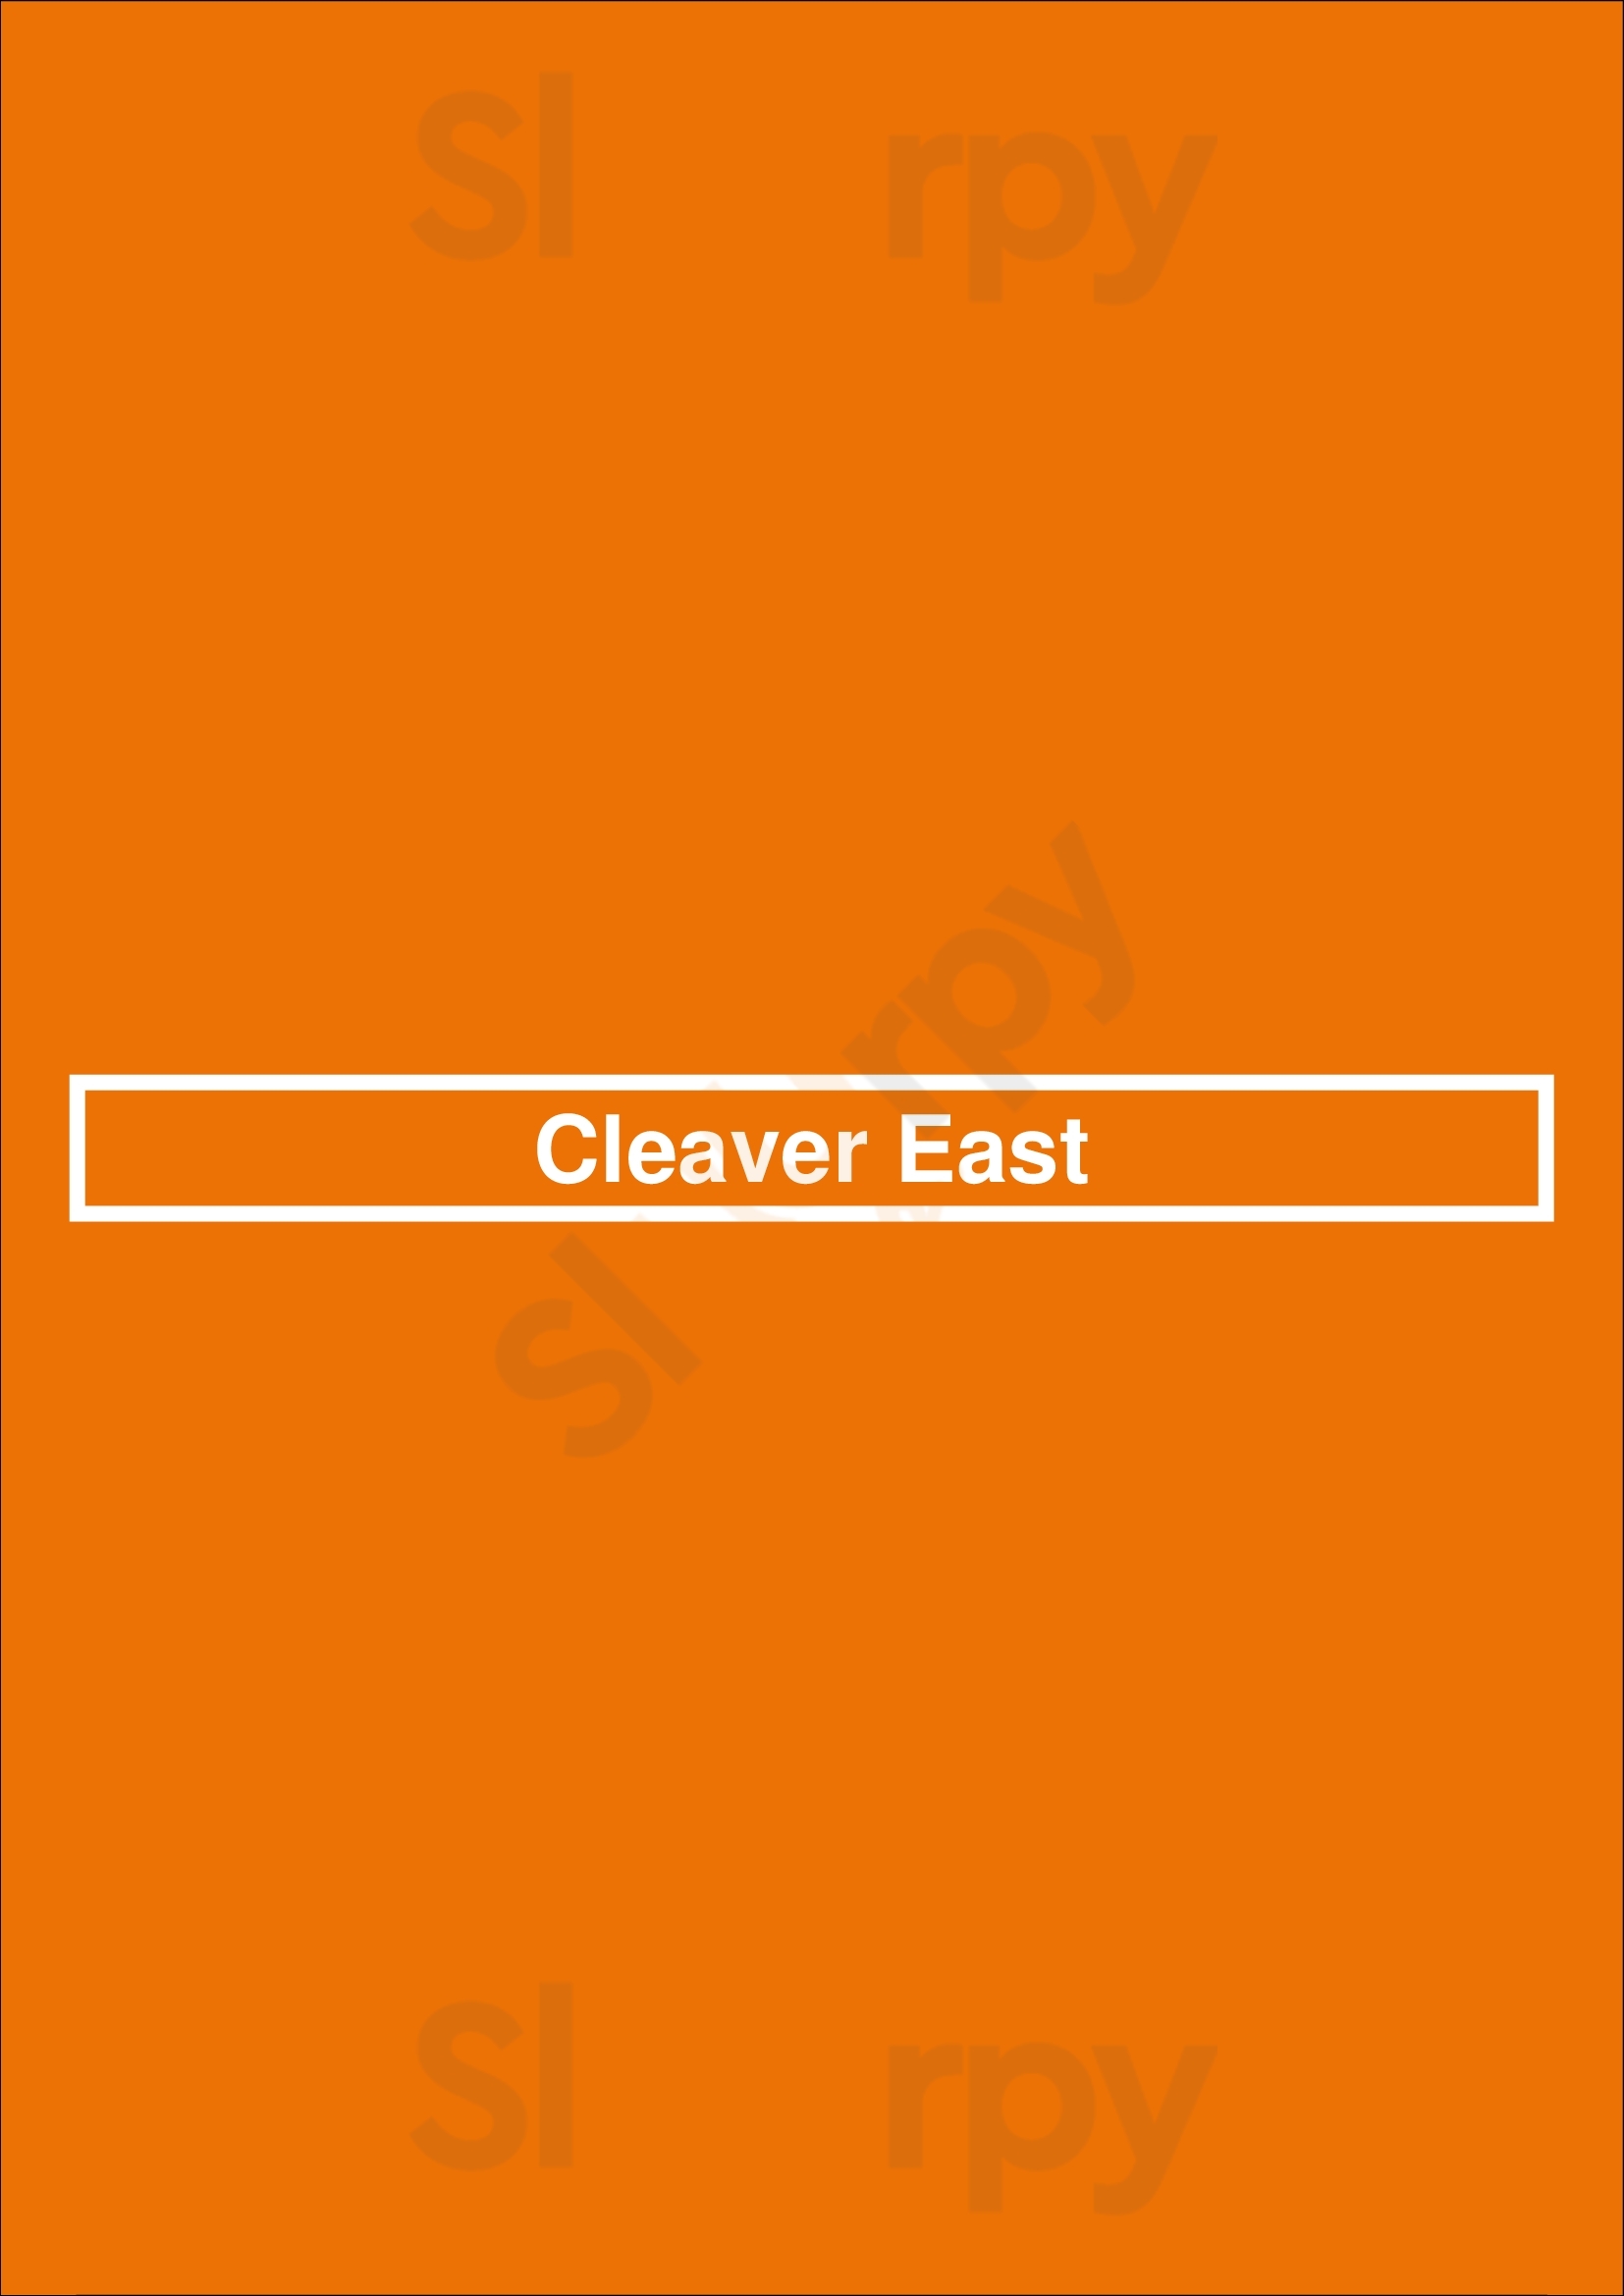 Cleaver East Dublin Menu - 1